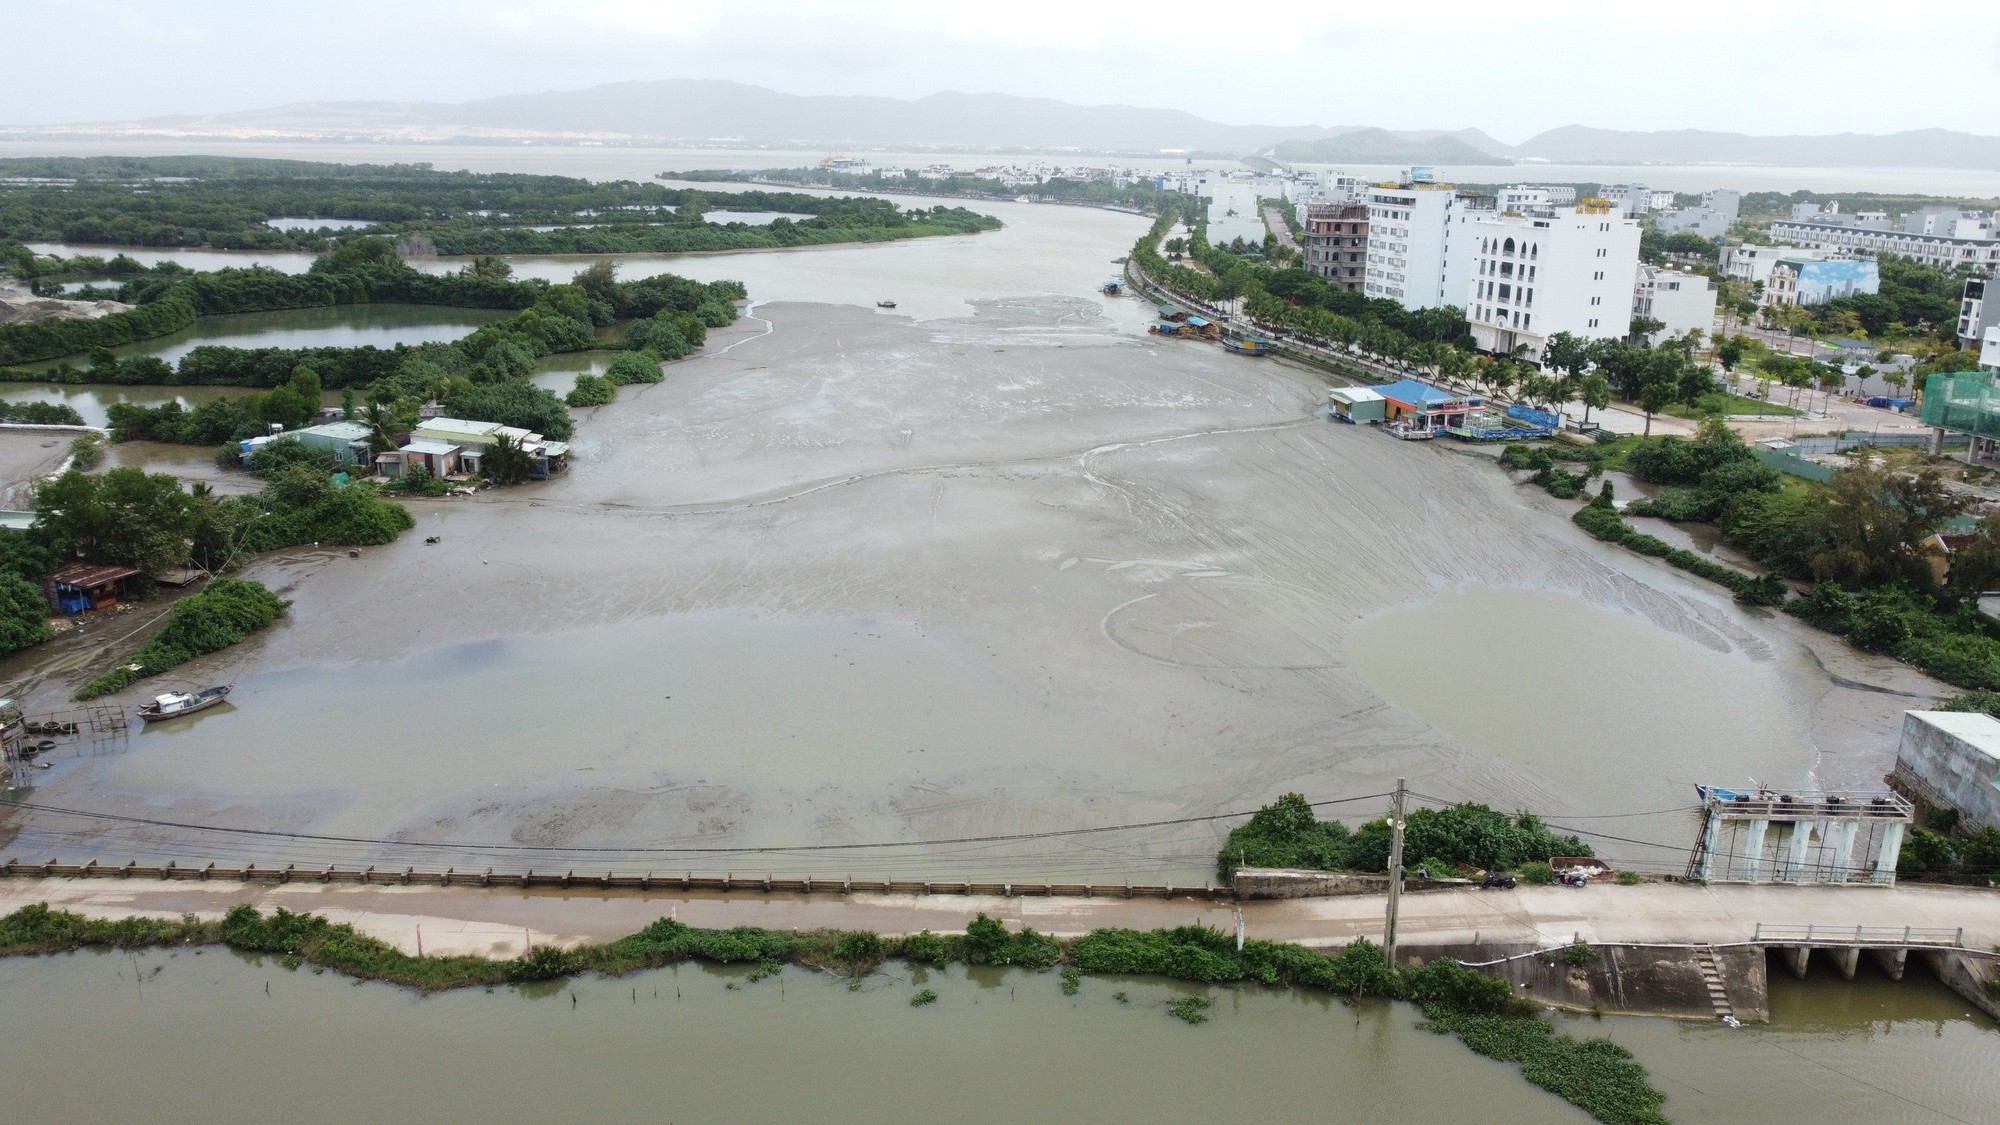 Tắc nghẽn dòng chảy vì bùn đất nạo vét cảng Quy Nhơn - Ảnh 2.